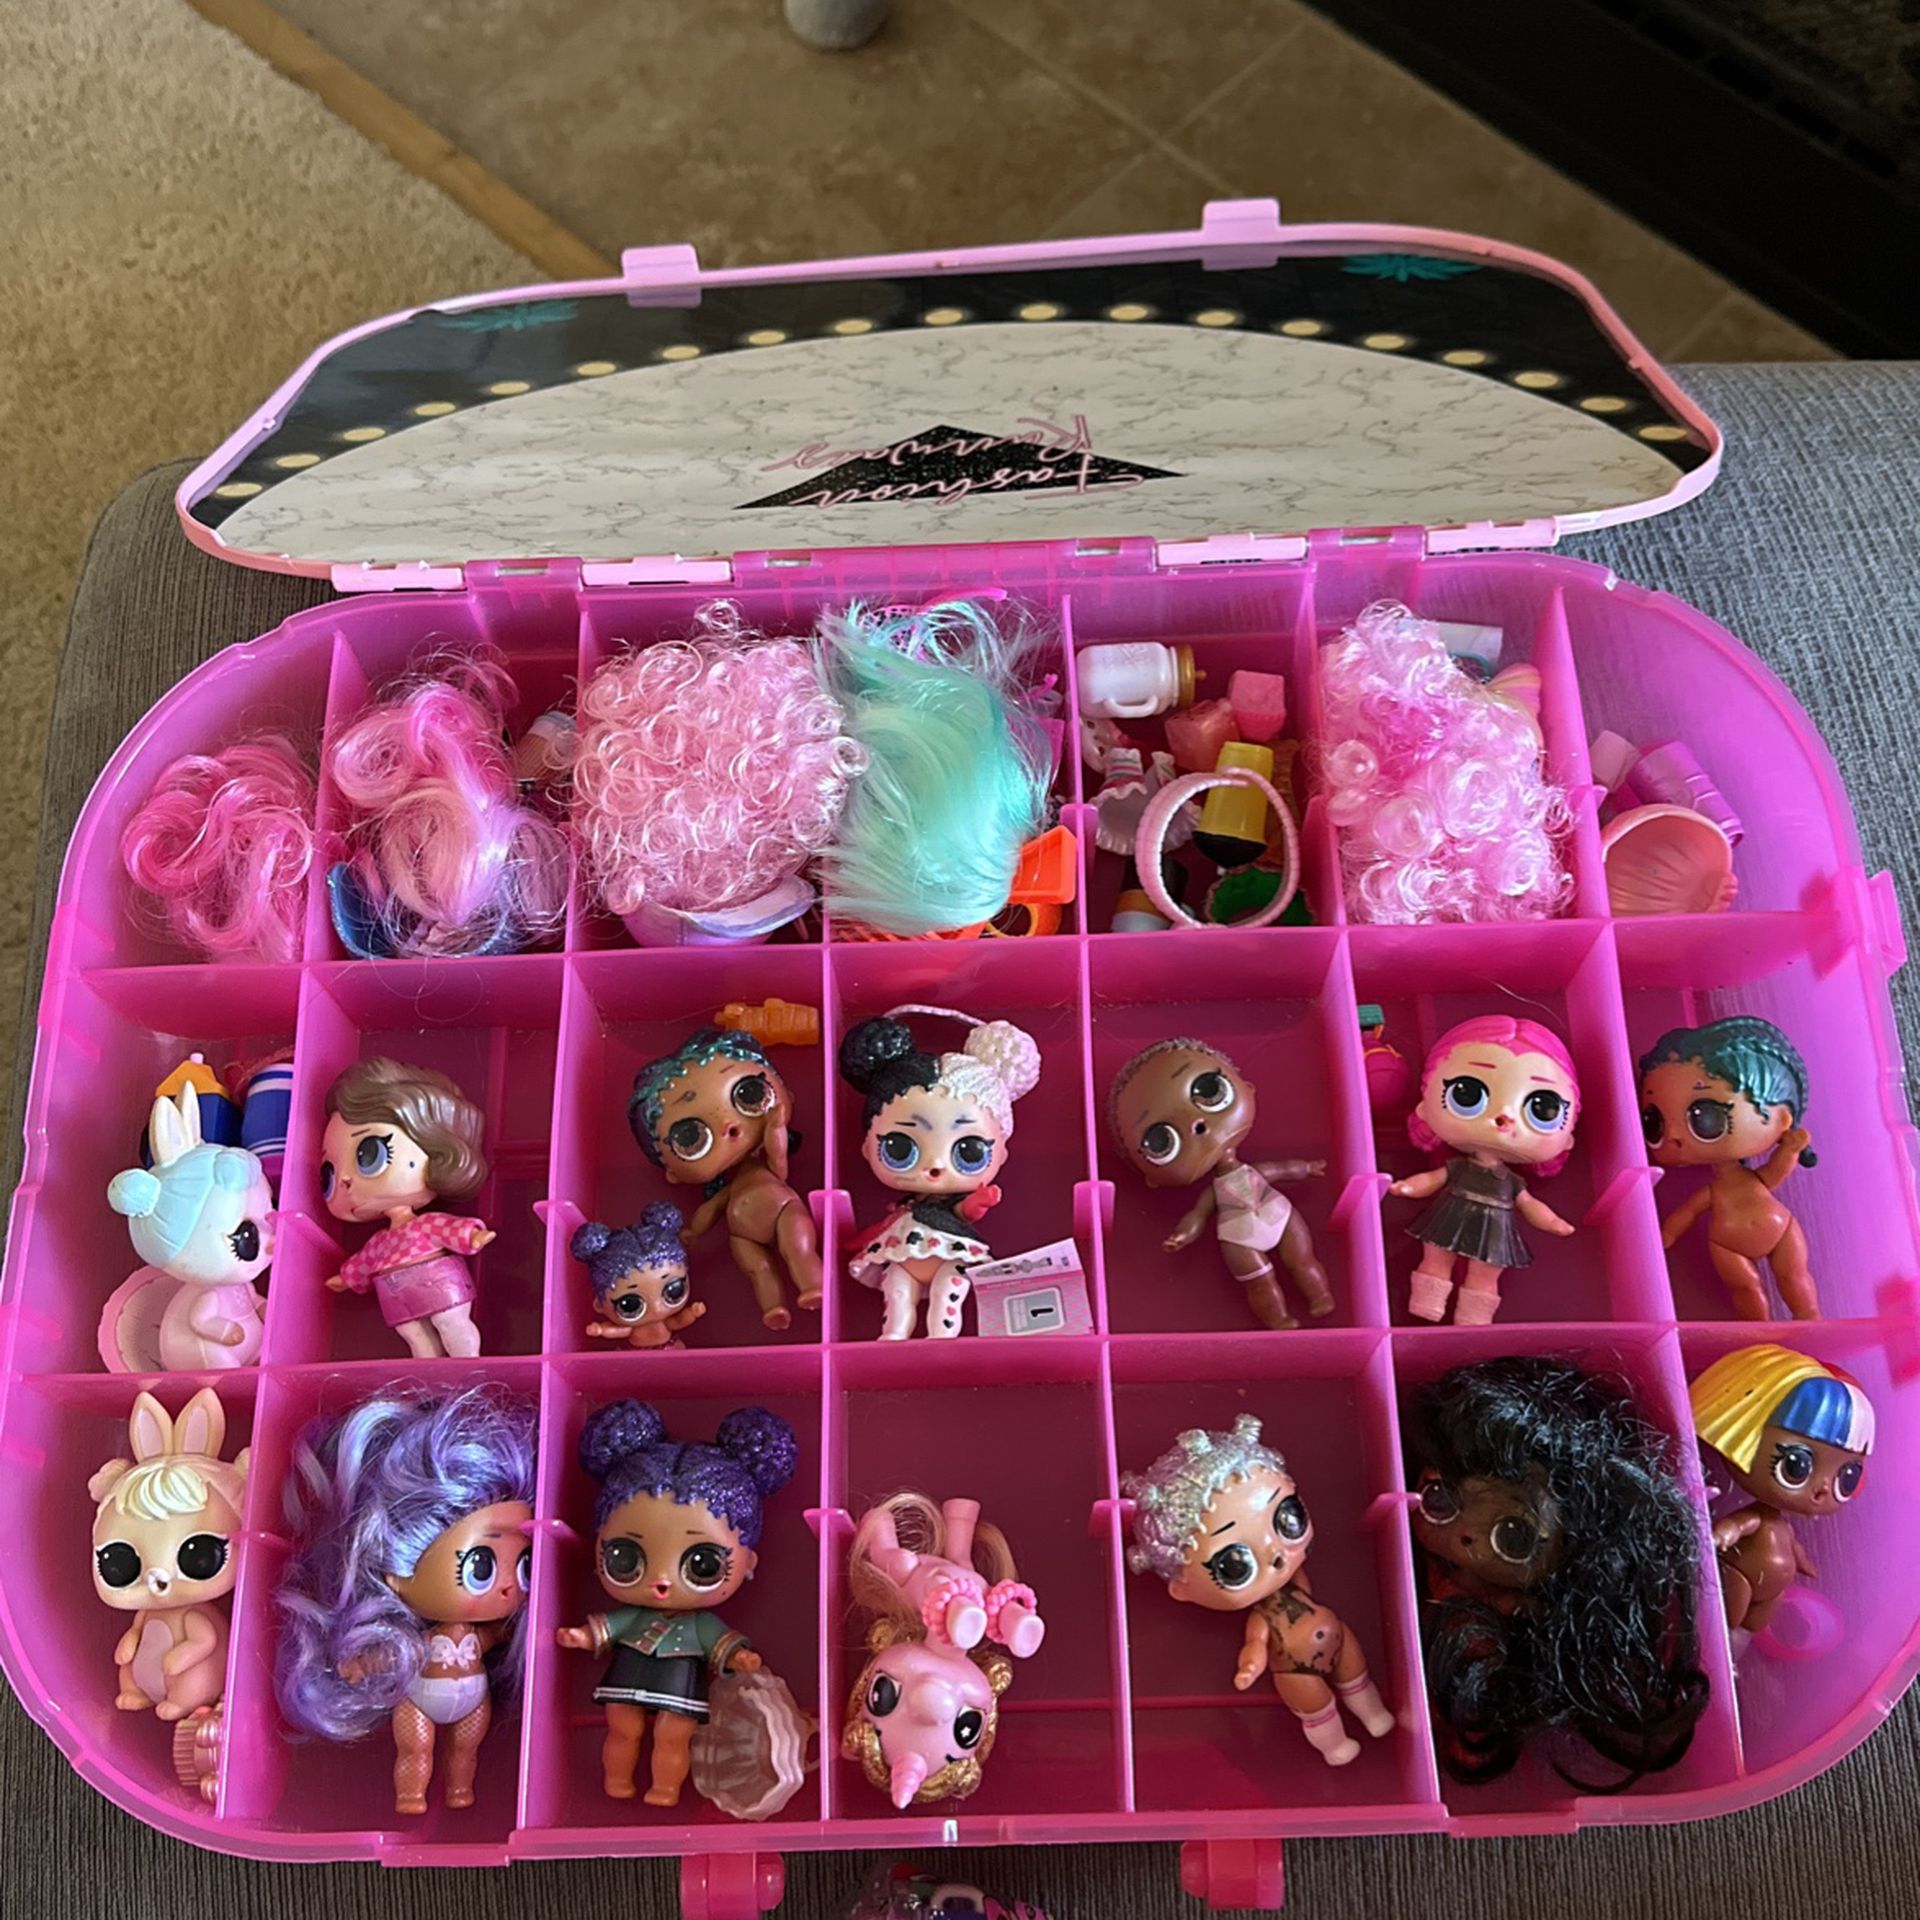 LOL Surprise Doll Storage Box for Sale in La Mesa, CA - OfferUp